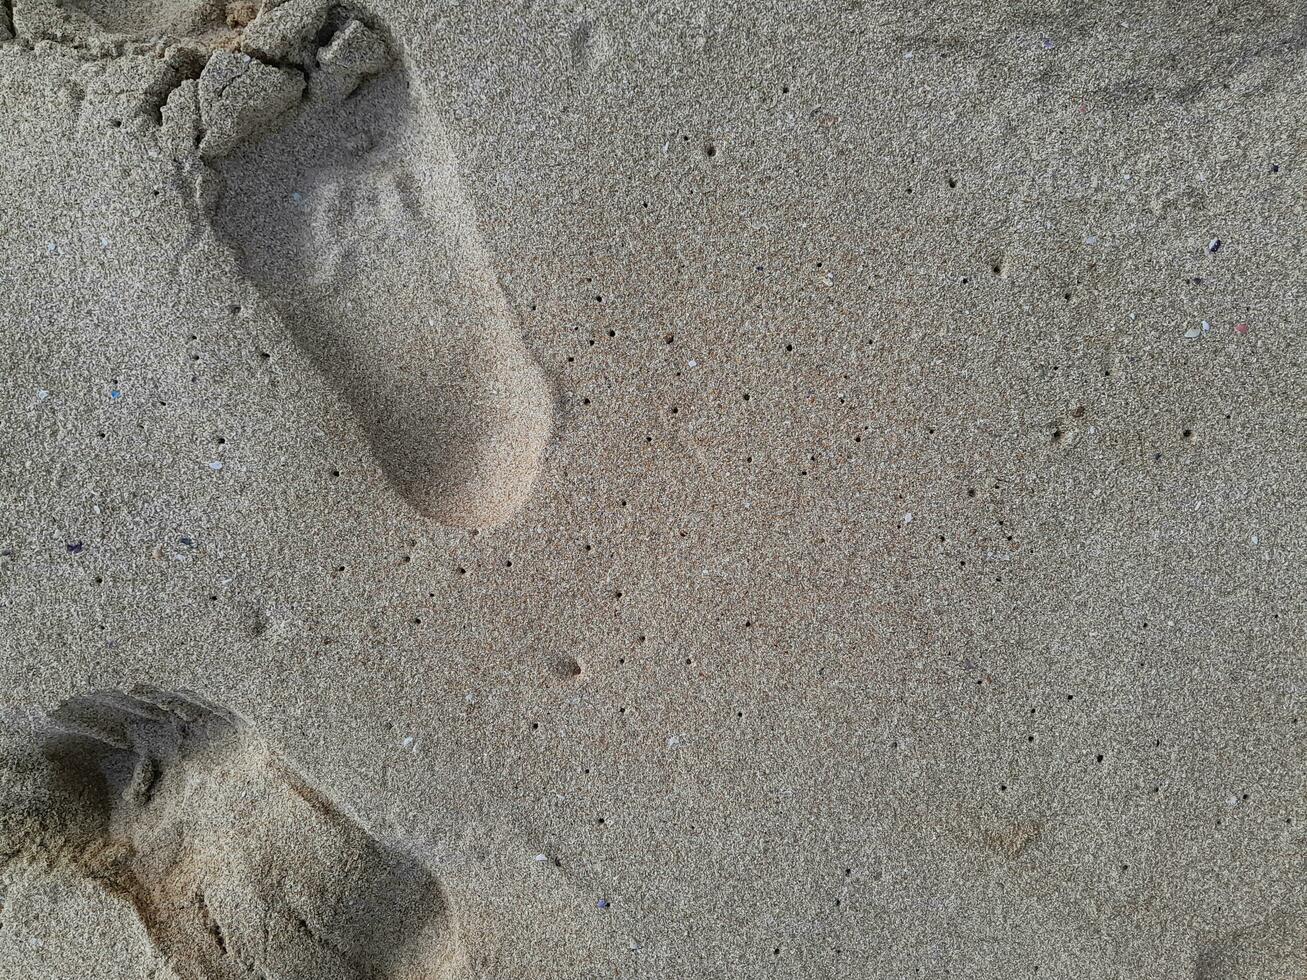 pegada texturizado do humano pés em a areia costeiro foto